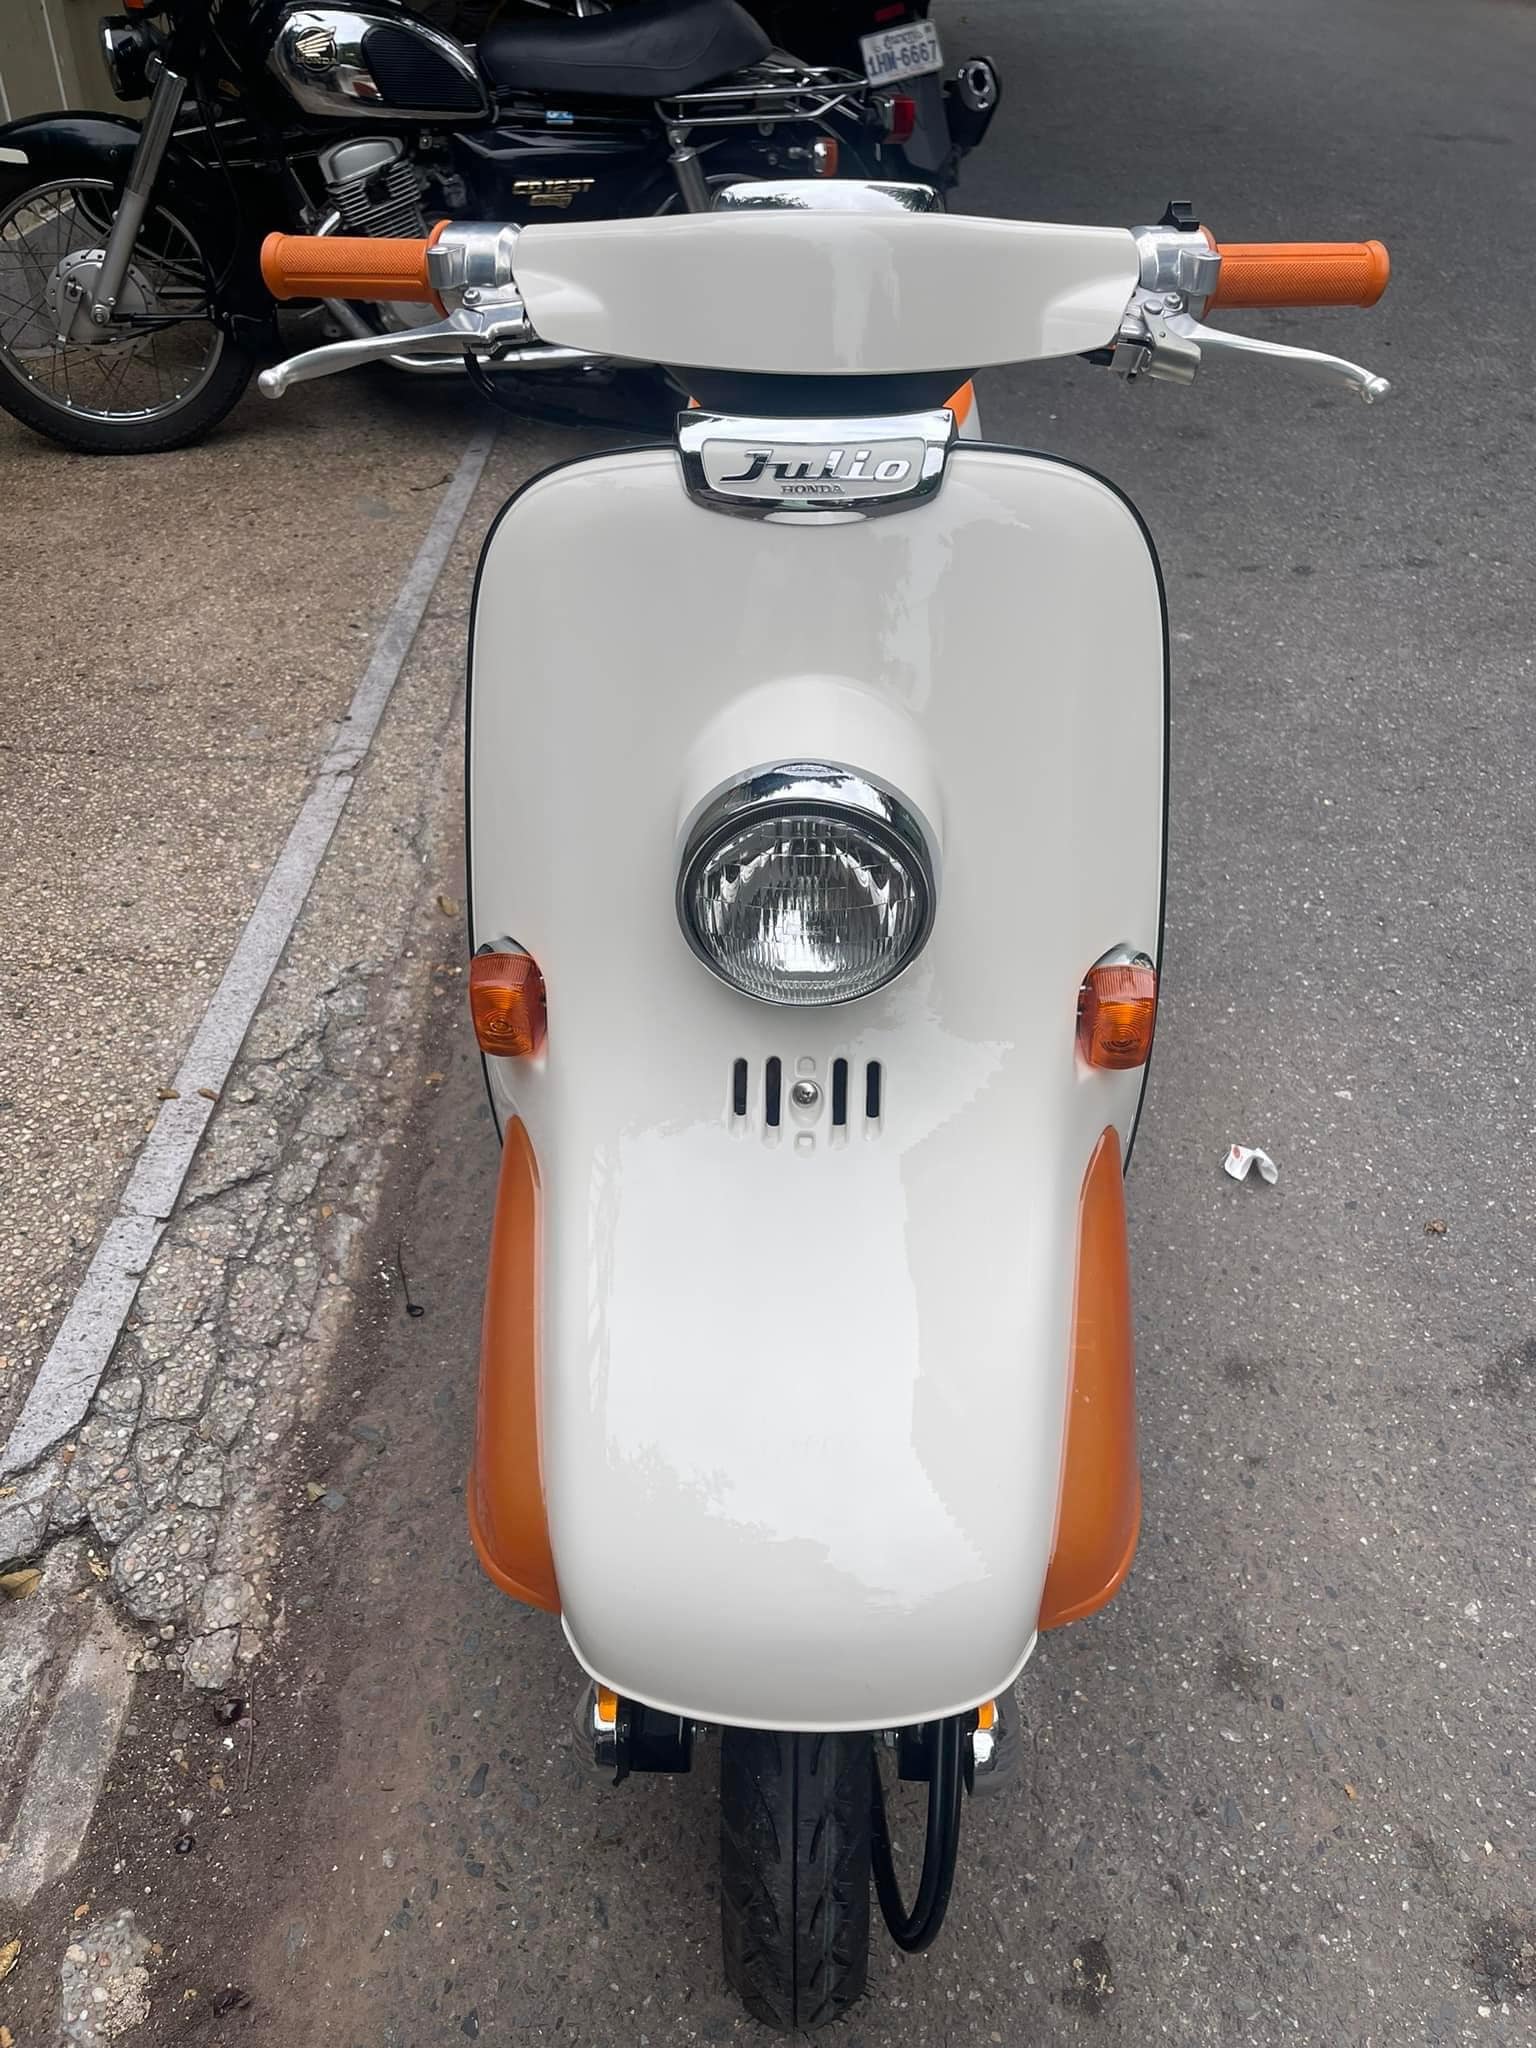 Bán xe Honda Giorno 50cc cũ nguyên bản | Cộng đồng Biker Việt Nam